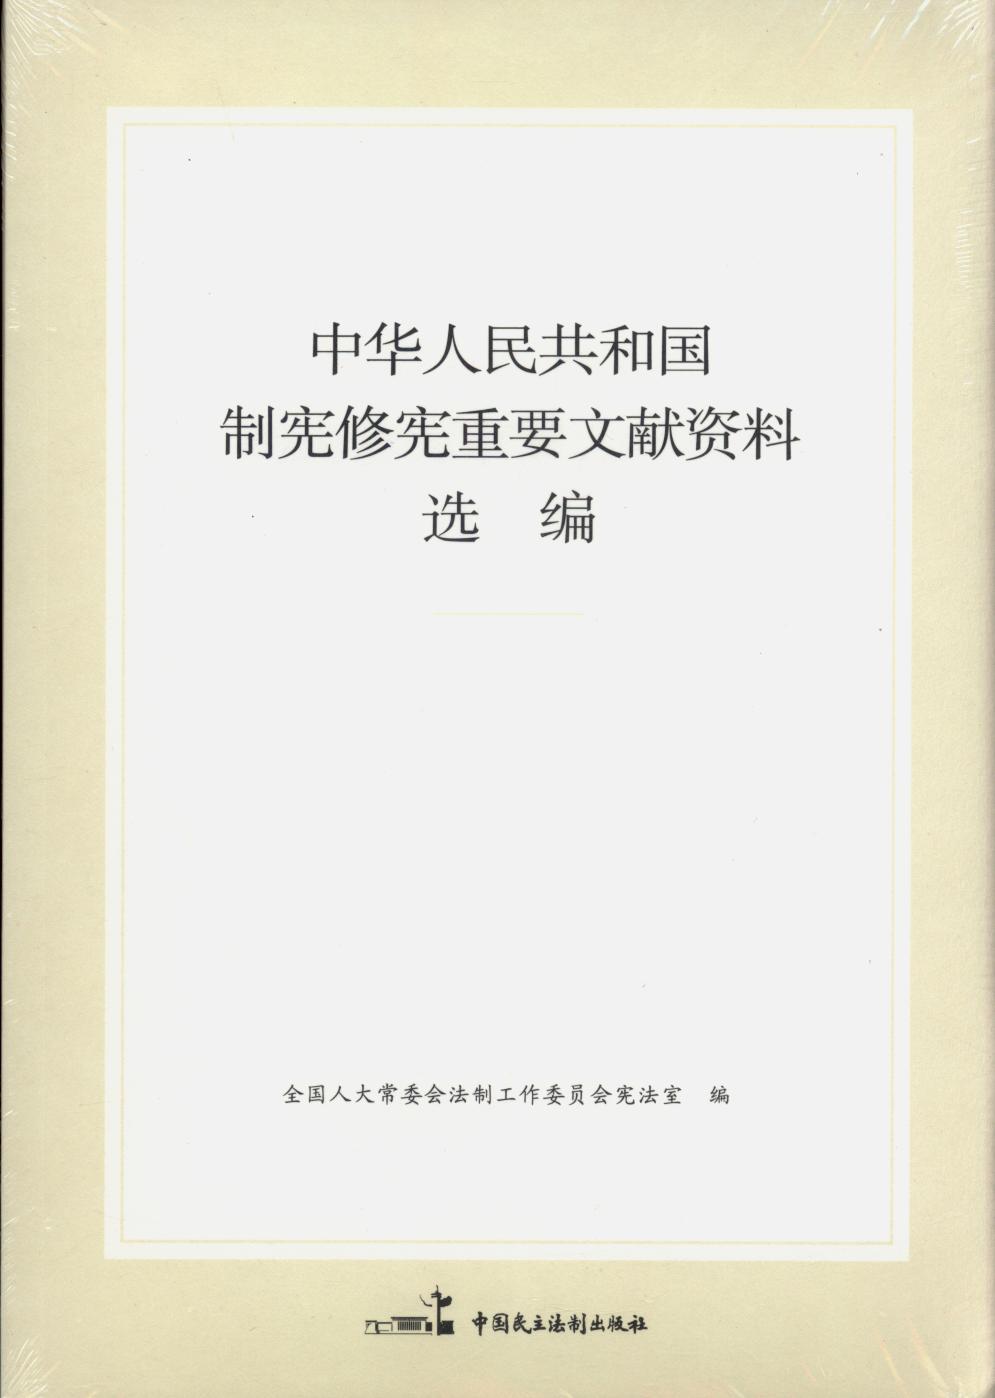 中华人民共和国修宪重要文献资料选编